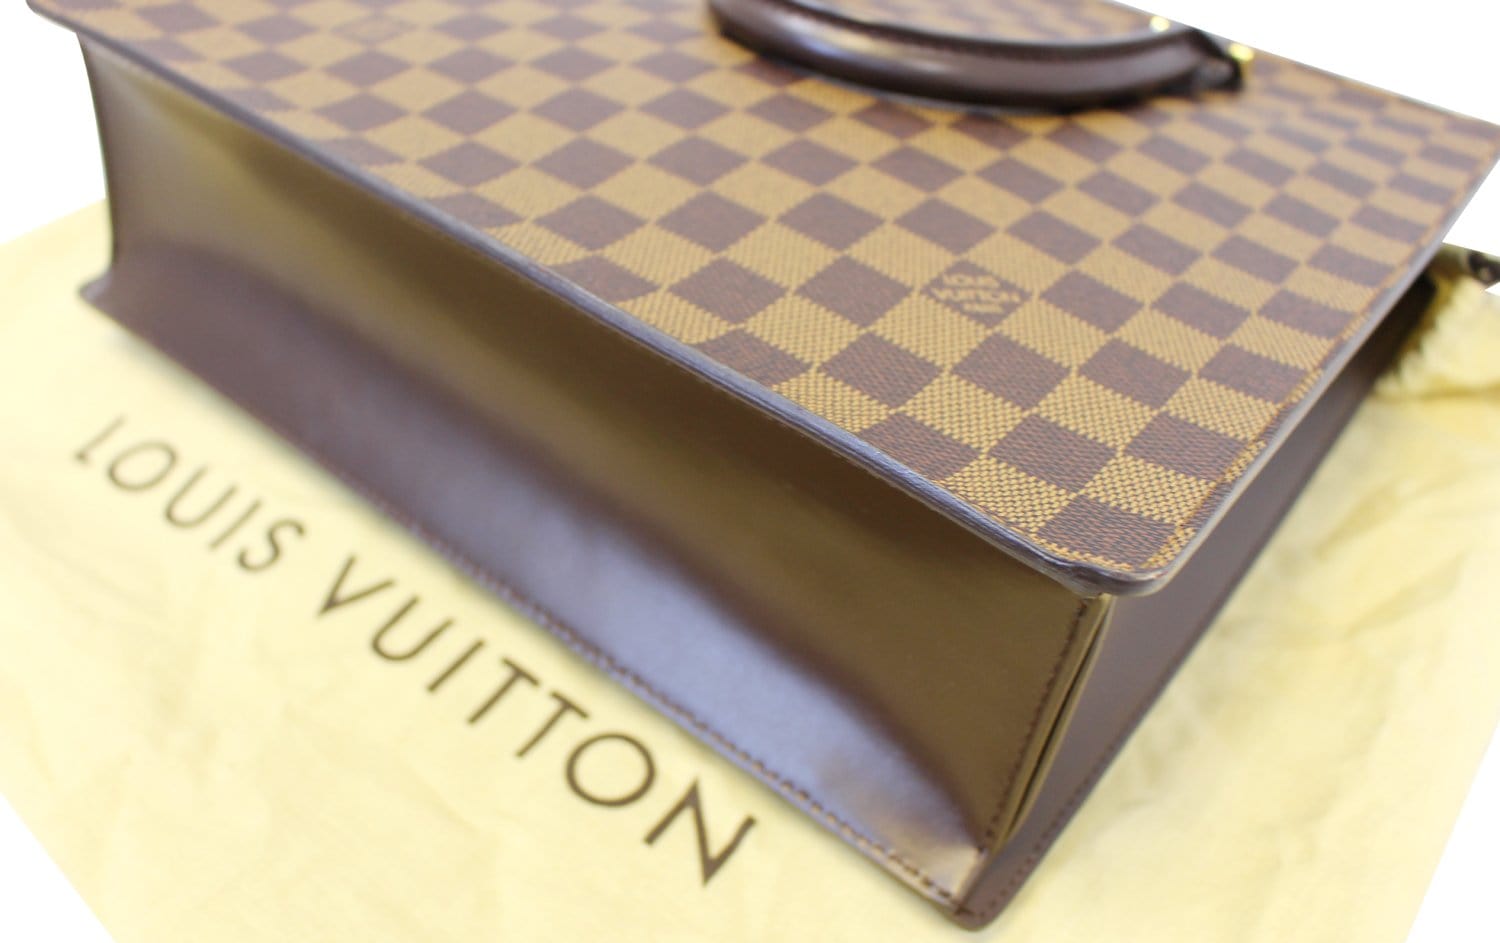 Louis Vuitton: Unboxing Sac Plat Venice PM: Damier Ebene: WIMB & Modshots  😍😍 